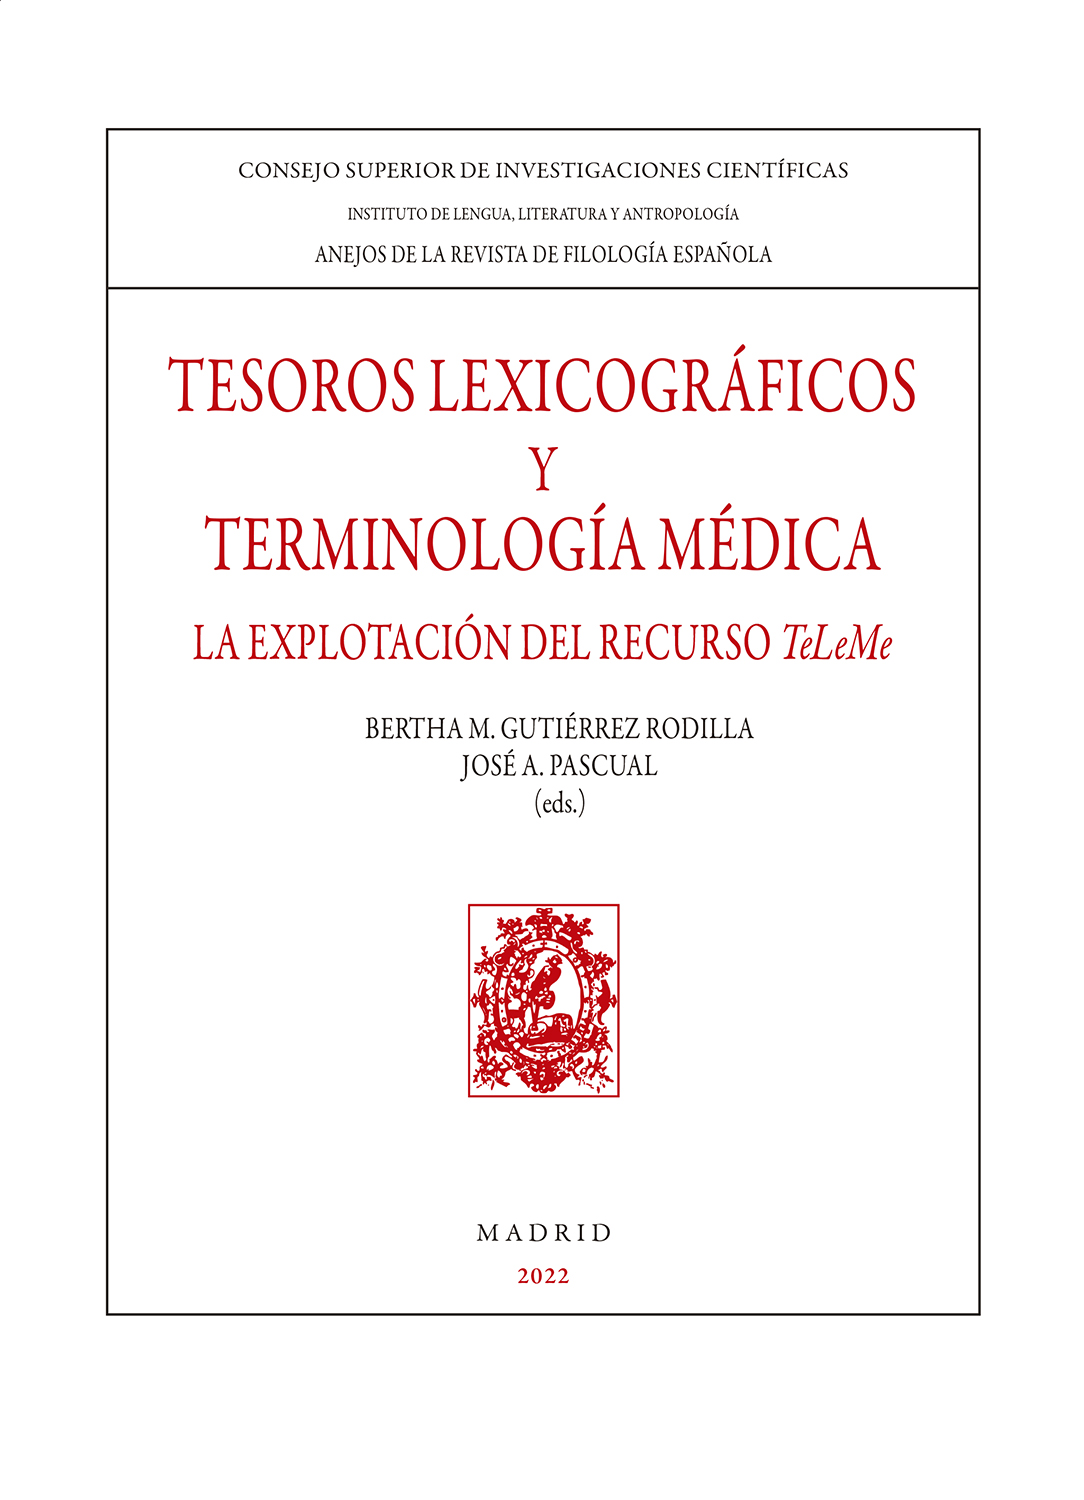 Tesoros lexicográficos y terminología médica